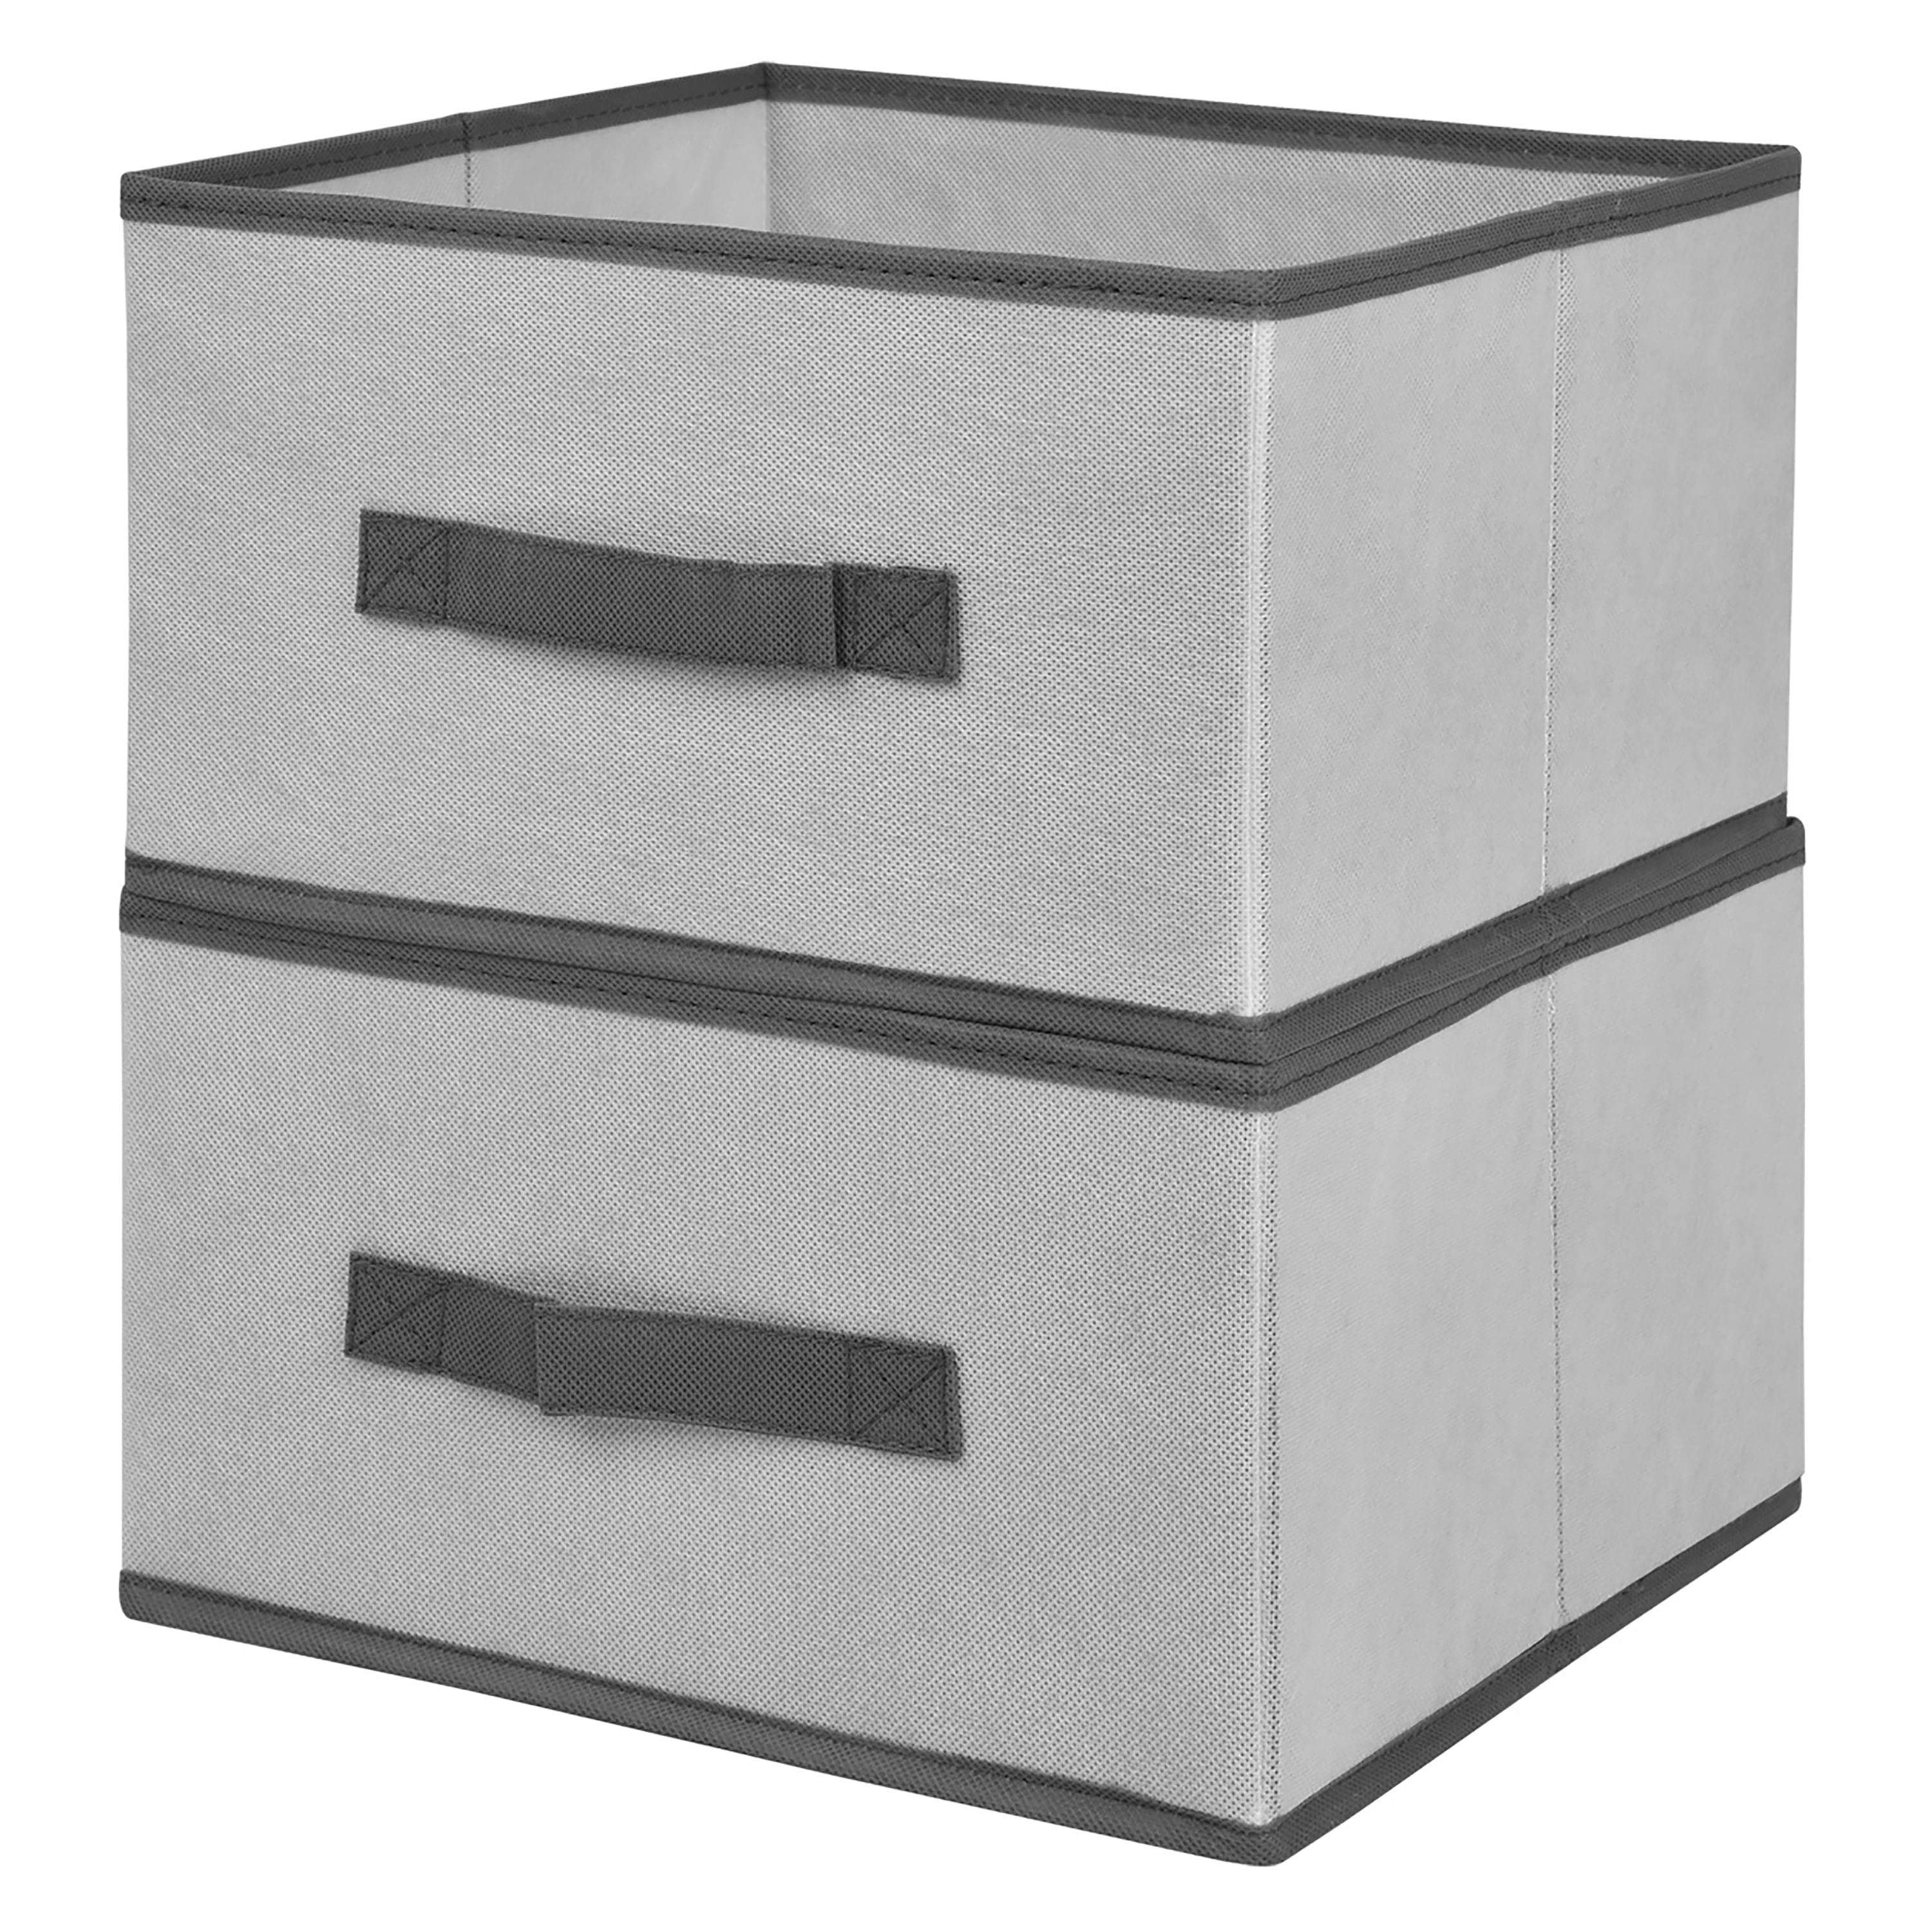 Basics Cajas organizadoras de almacenamiento de cajones de tela,  juego de 6, color gris